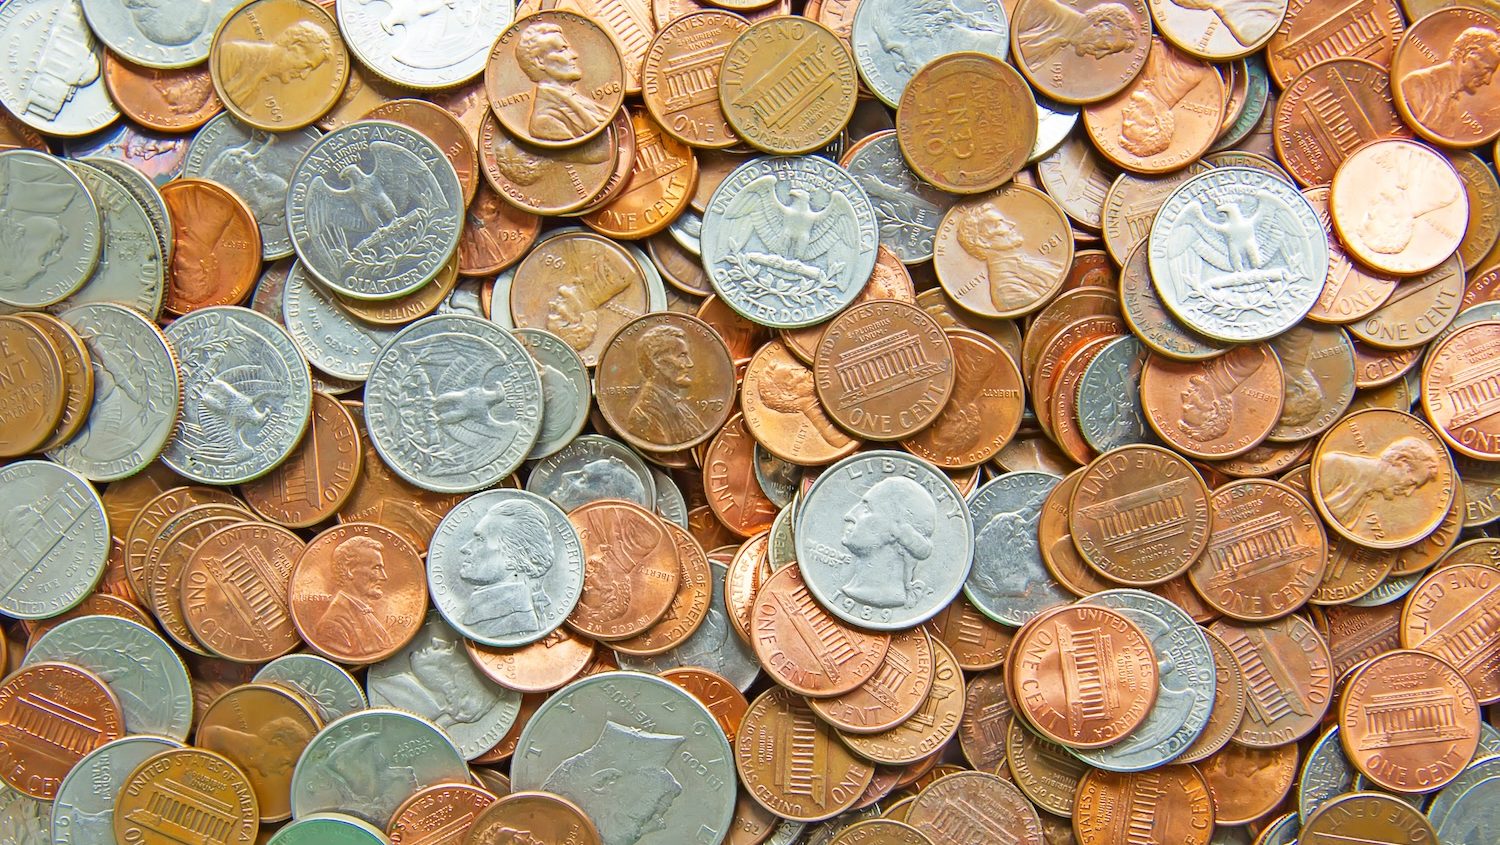 Revisa tu cambio porque hay monedas de centavos que podrían valer hasta $30,000 dólares – La Opinión